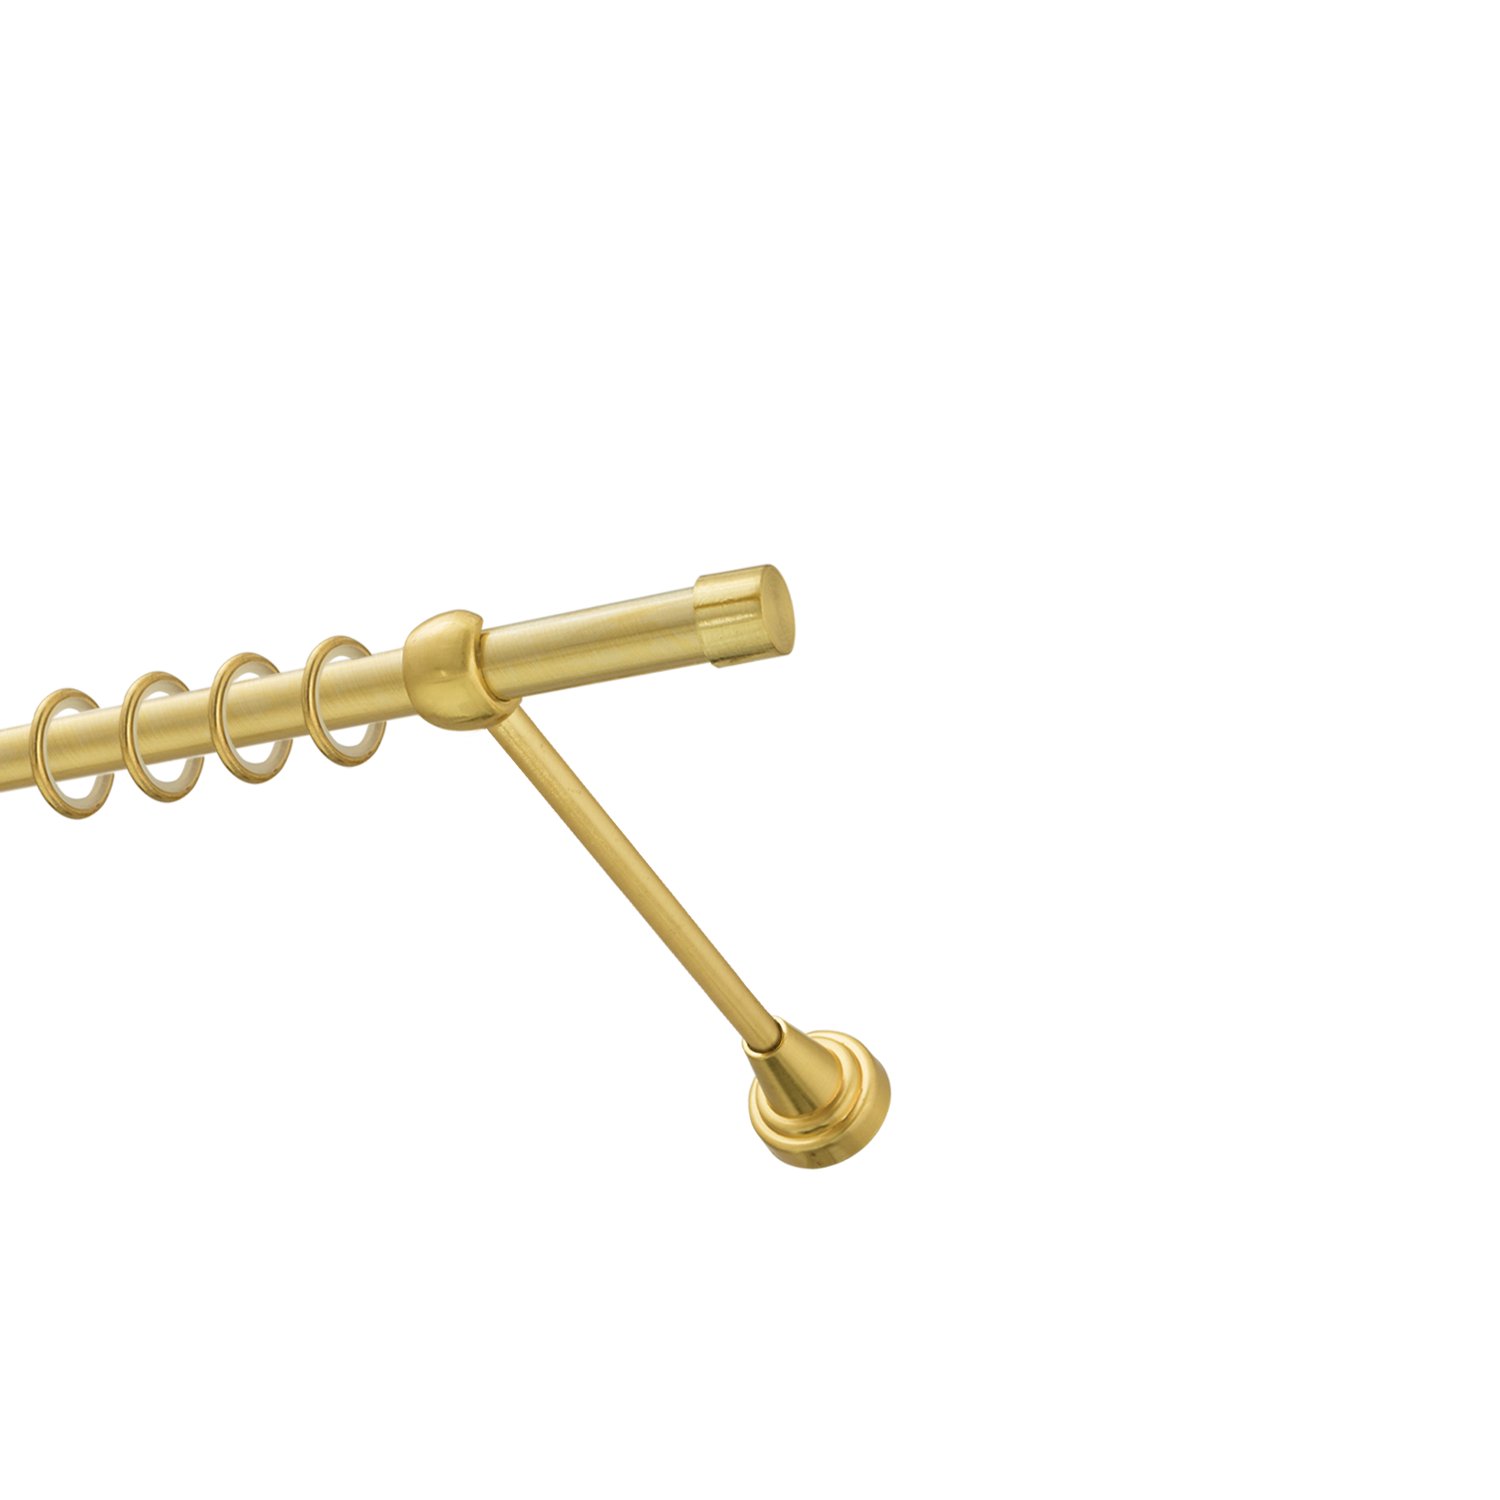 Металлический карниз для штор Заглушка, однорядный 16 мм, золото, гладкая штанга, длина 140 см - фото Wikidecor.ru